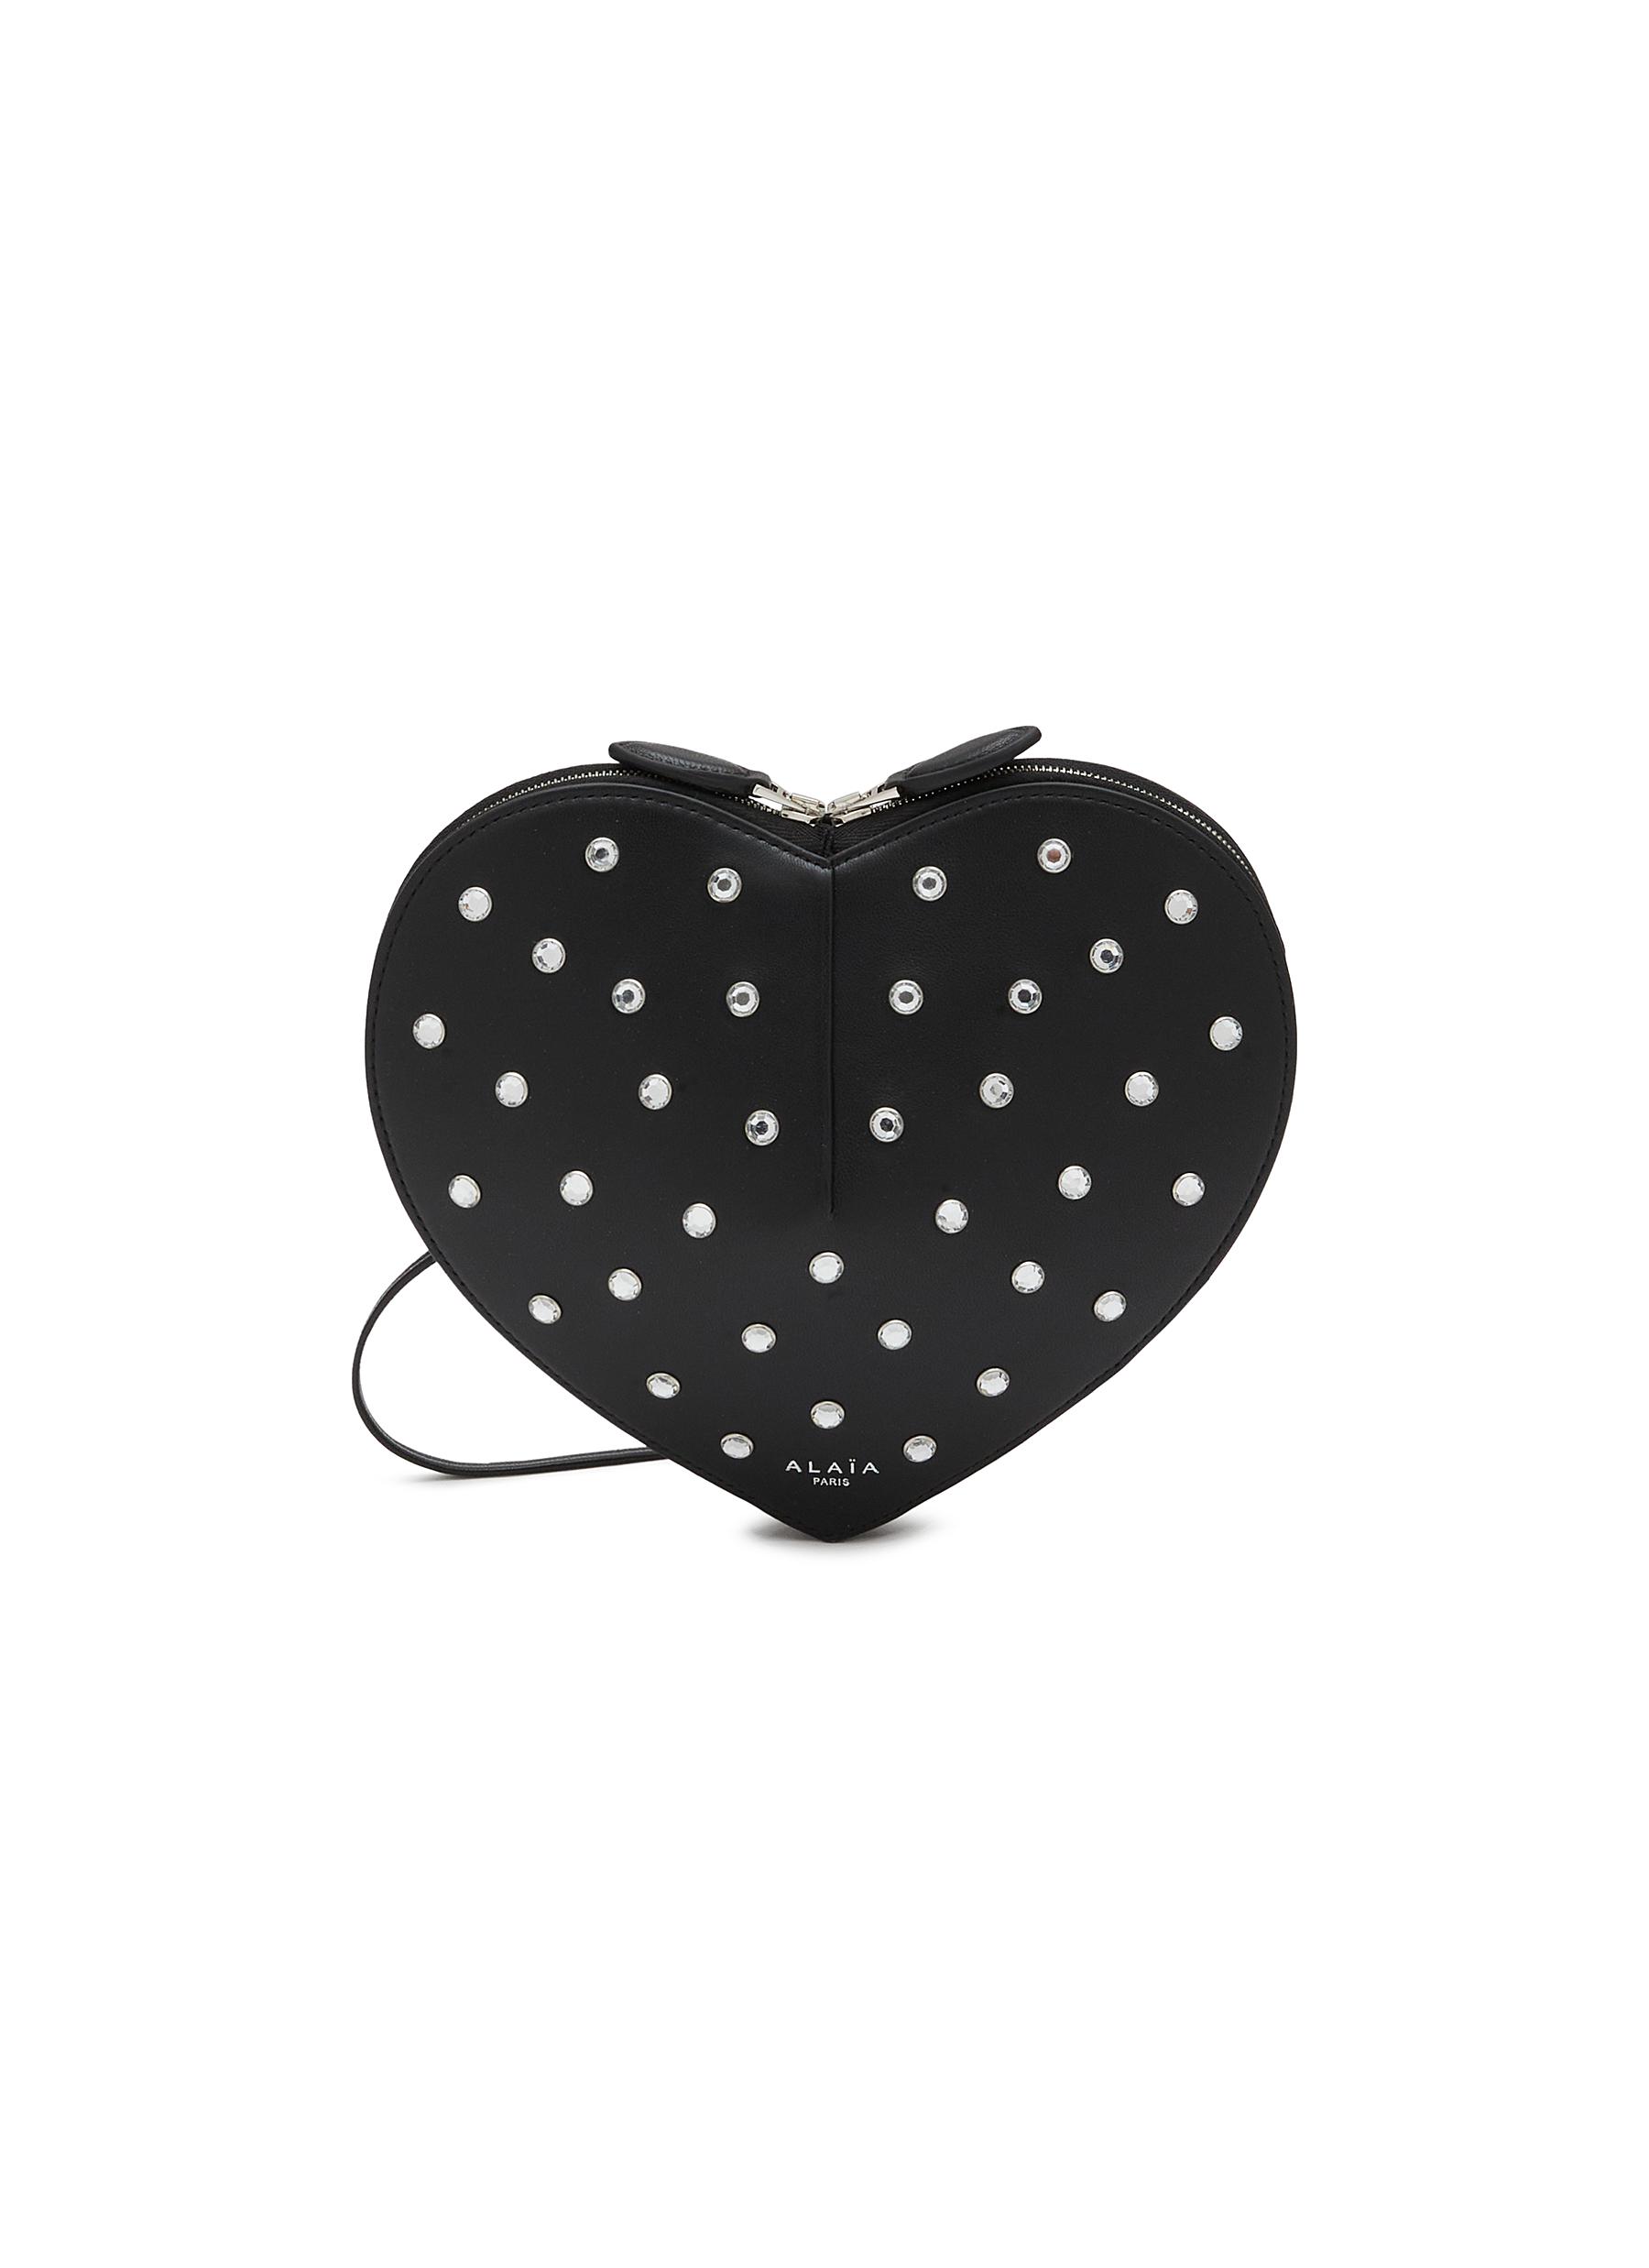 ALAÏA Le Coeur Leather Crossbody Bag